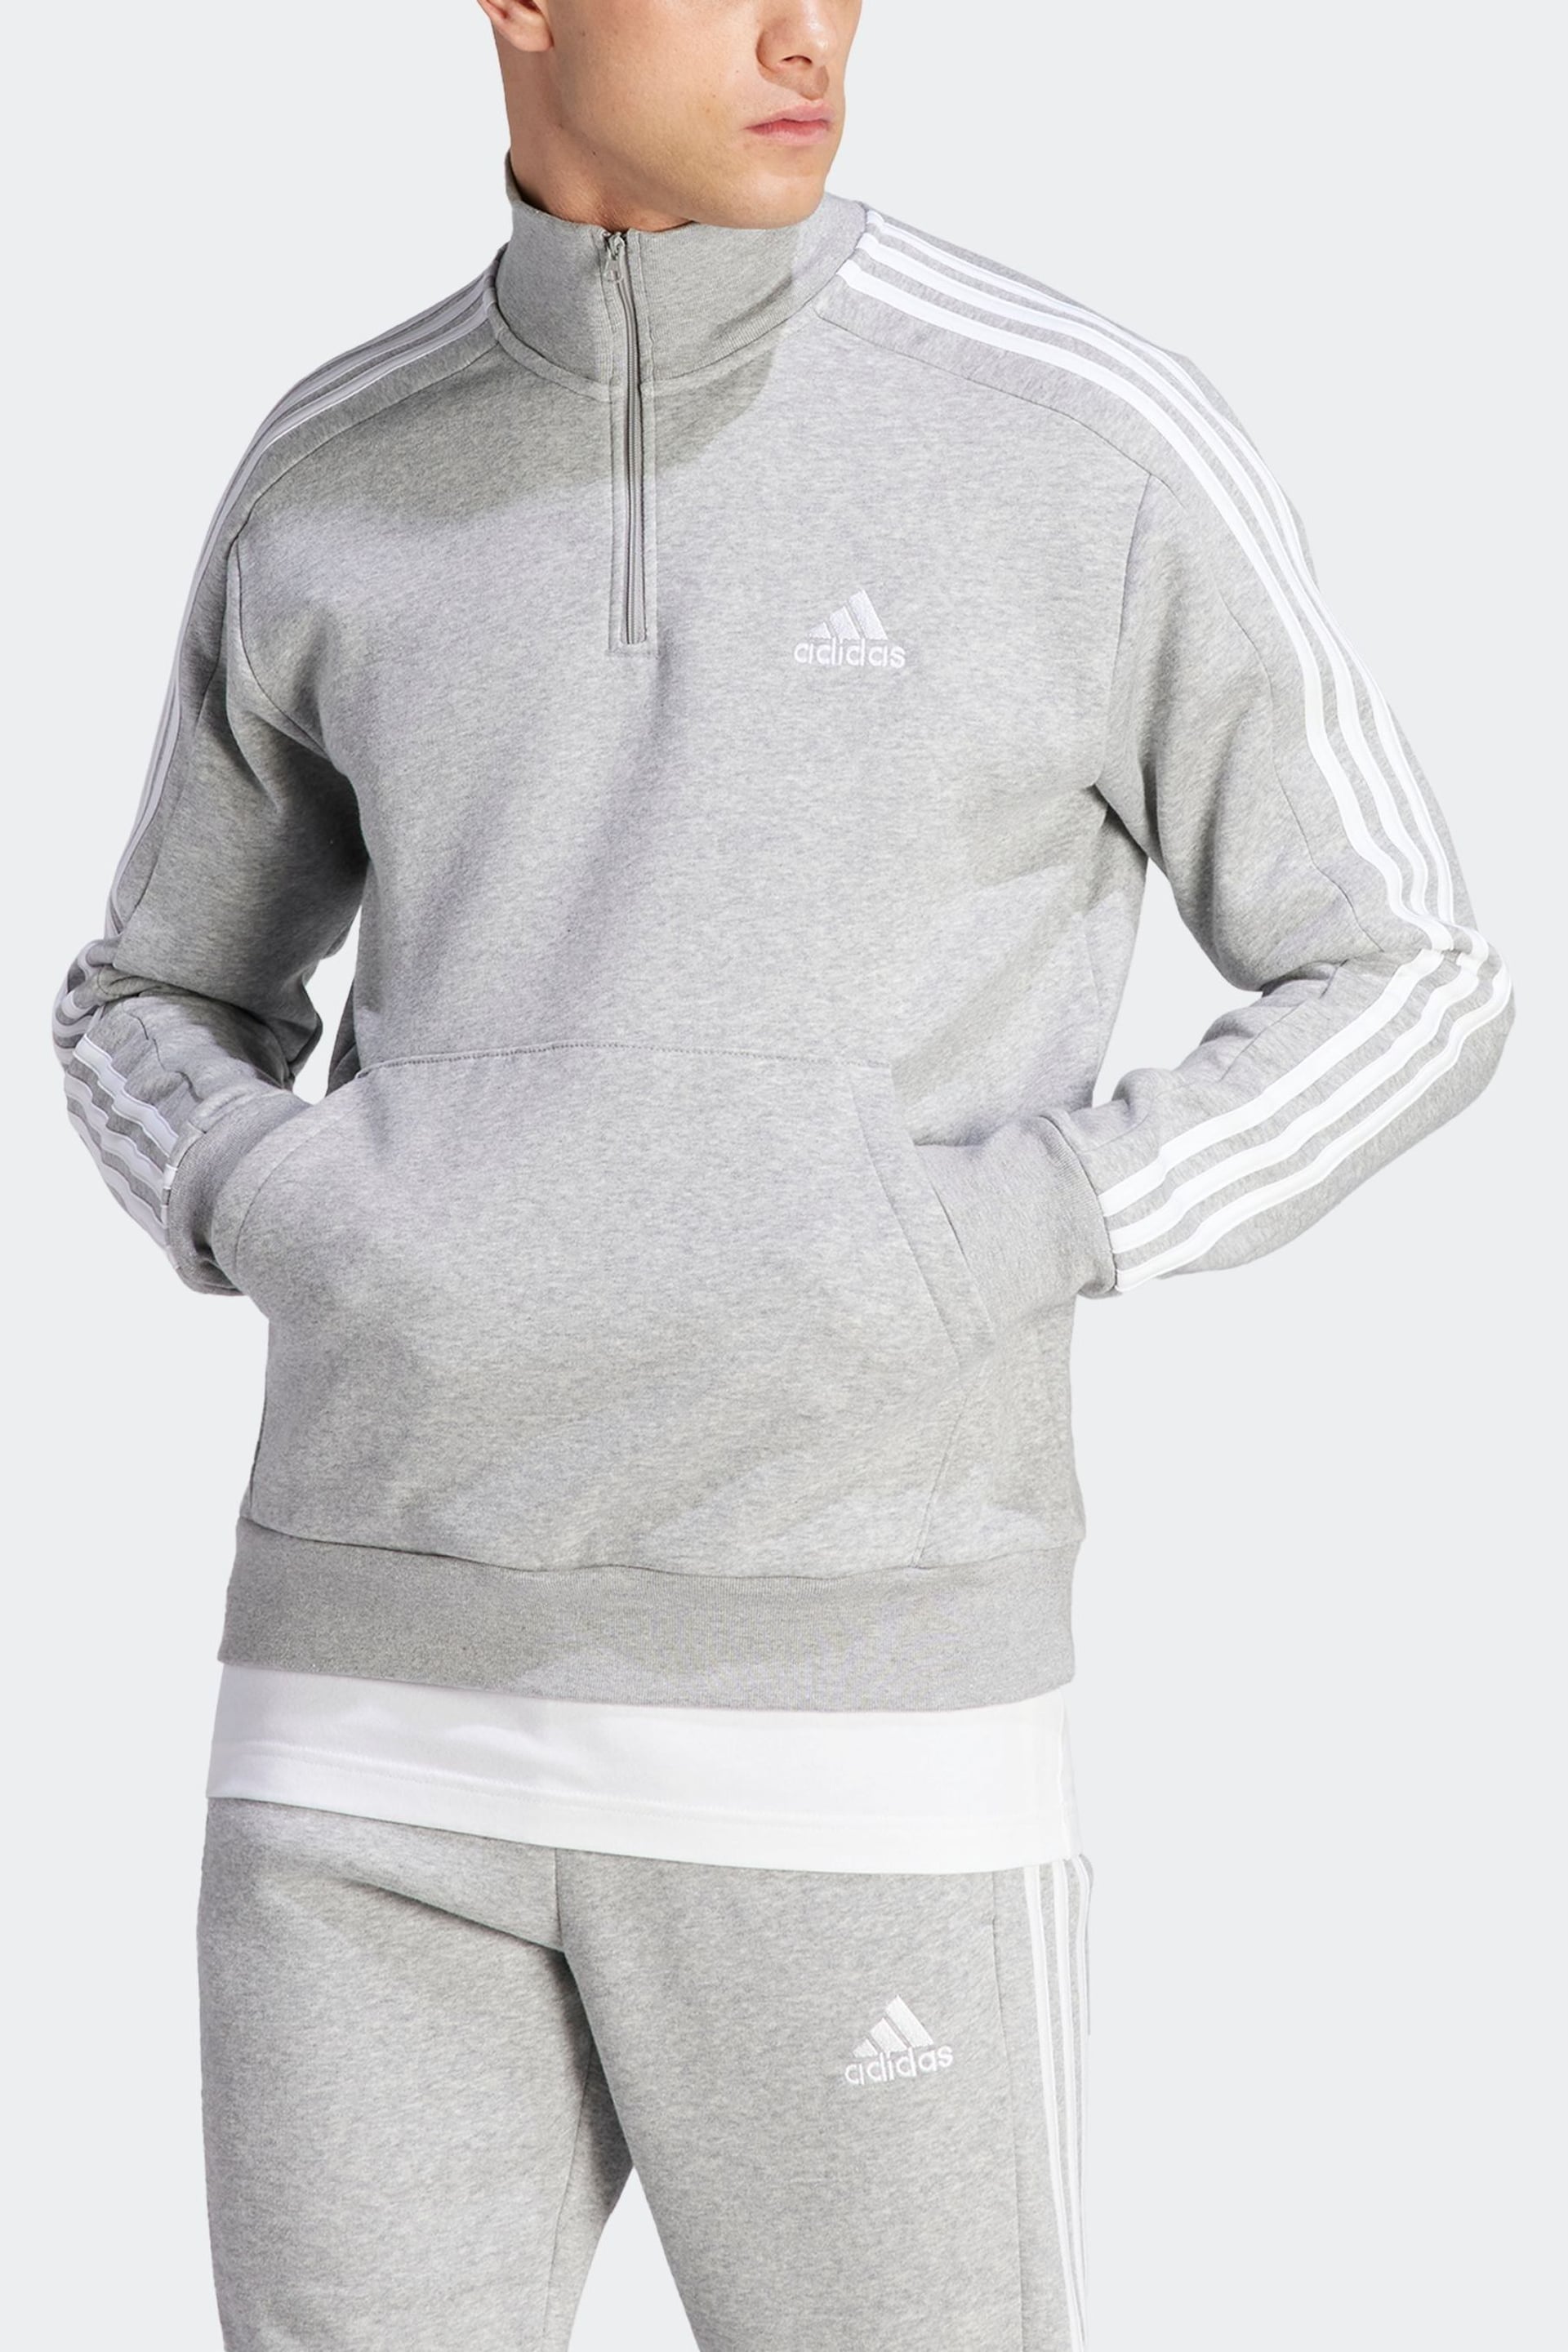 adidas Grey Essentials Fleece 3-Stripes 1/4-Zip Sweatshirt - Image 4 of 7